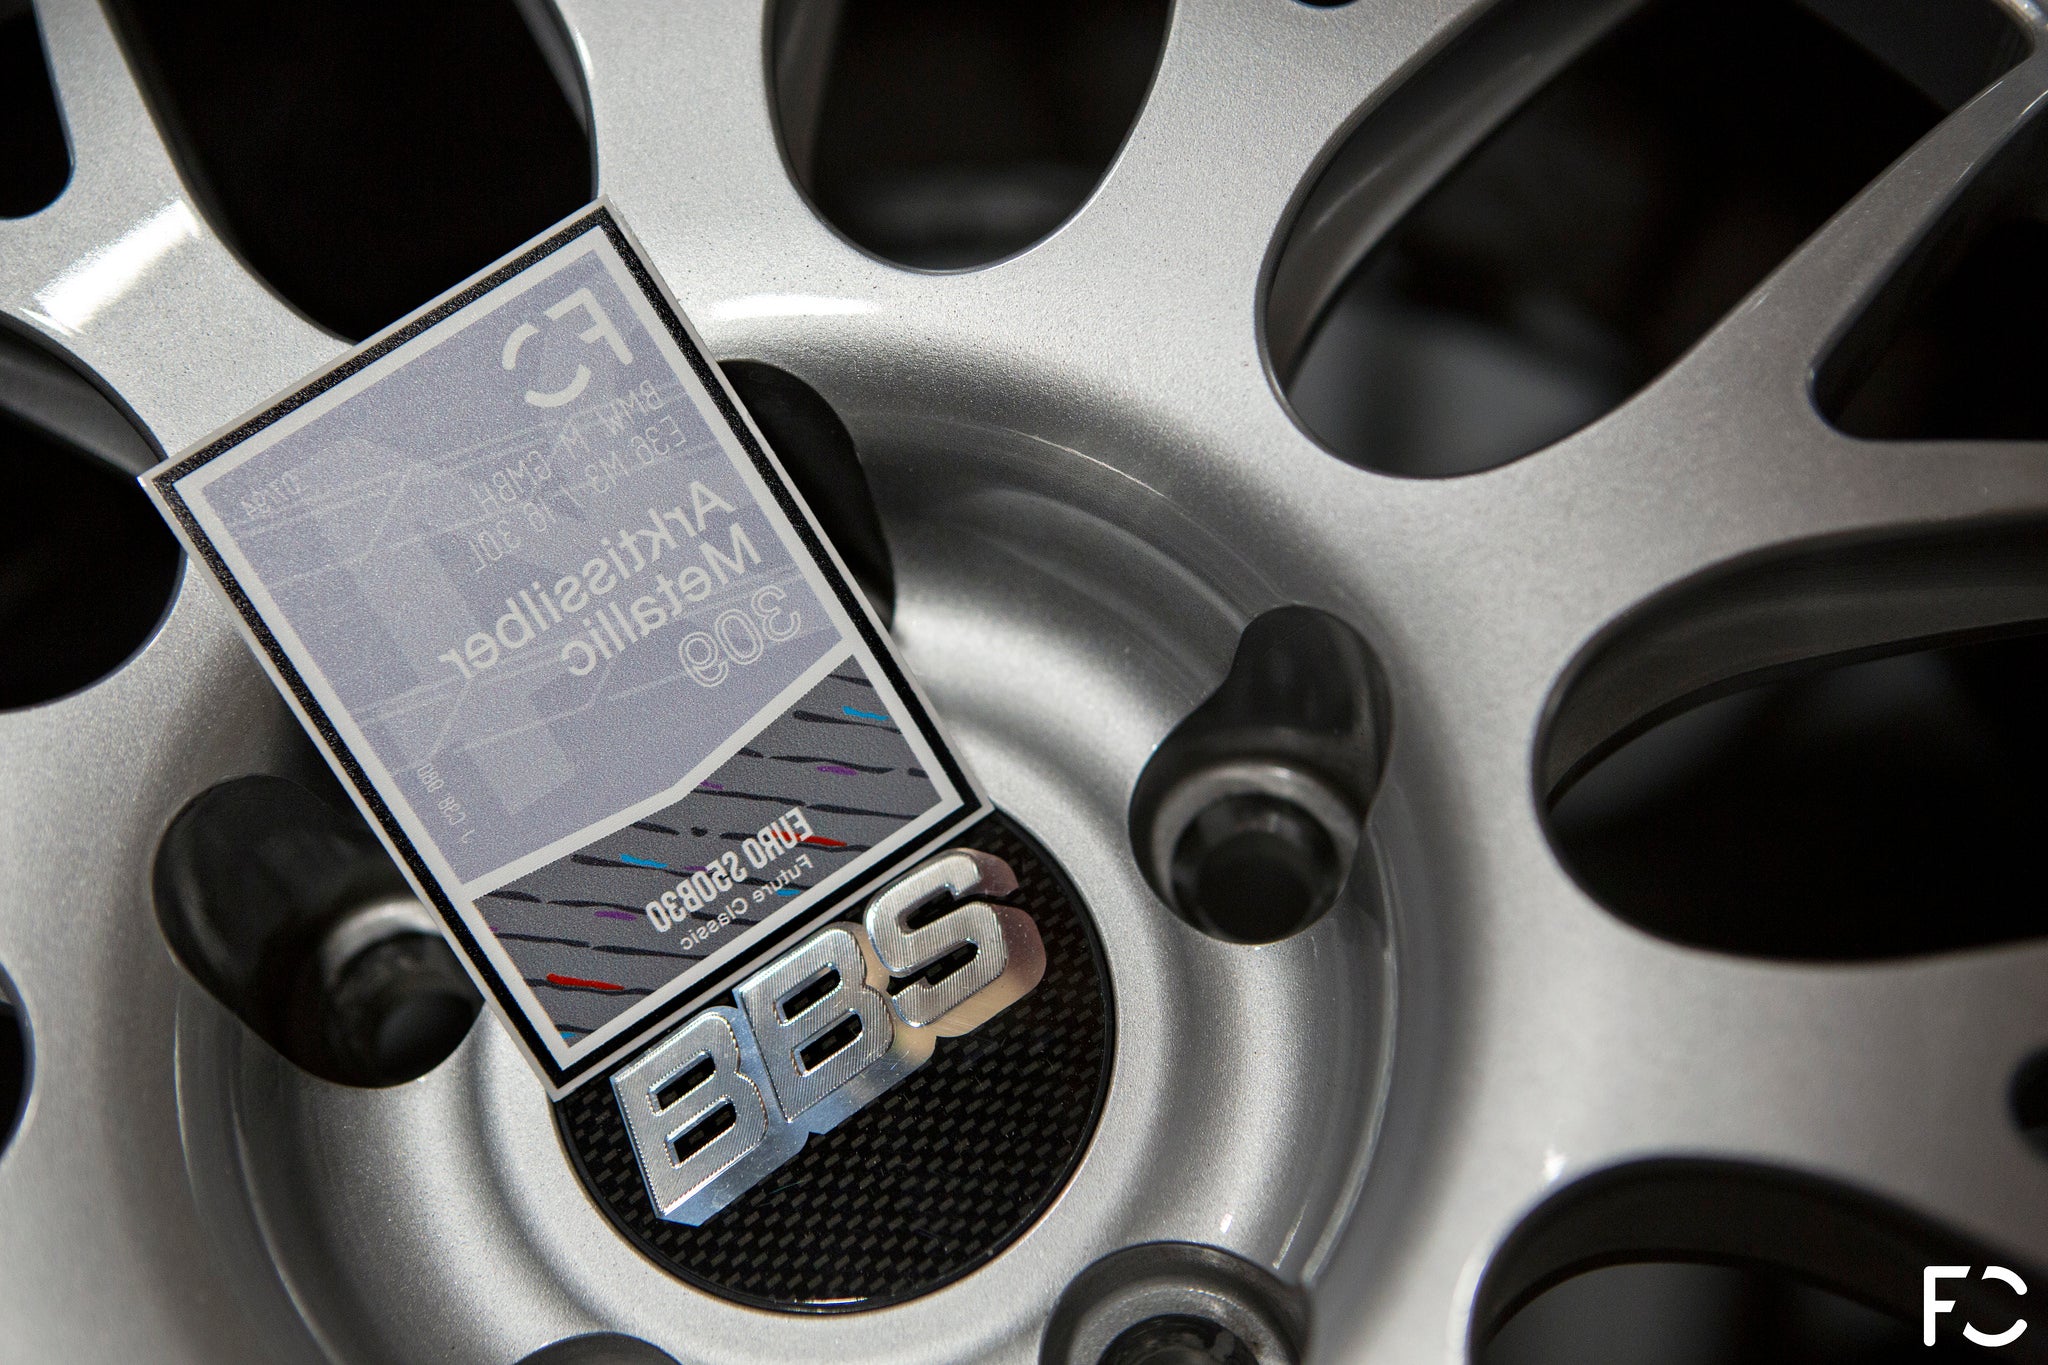 Replica BMW Decorative Sticker Kit, Shop Today. Get it Tomorrow!